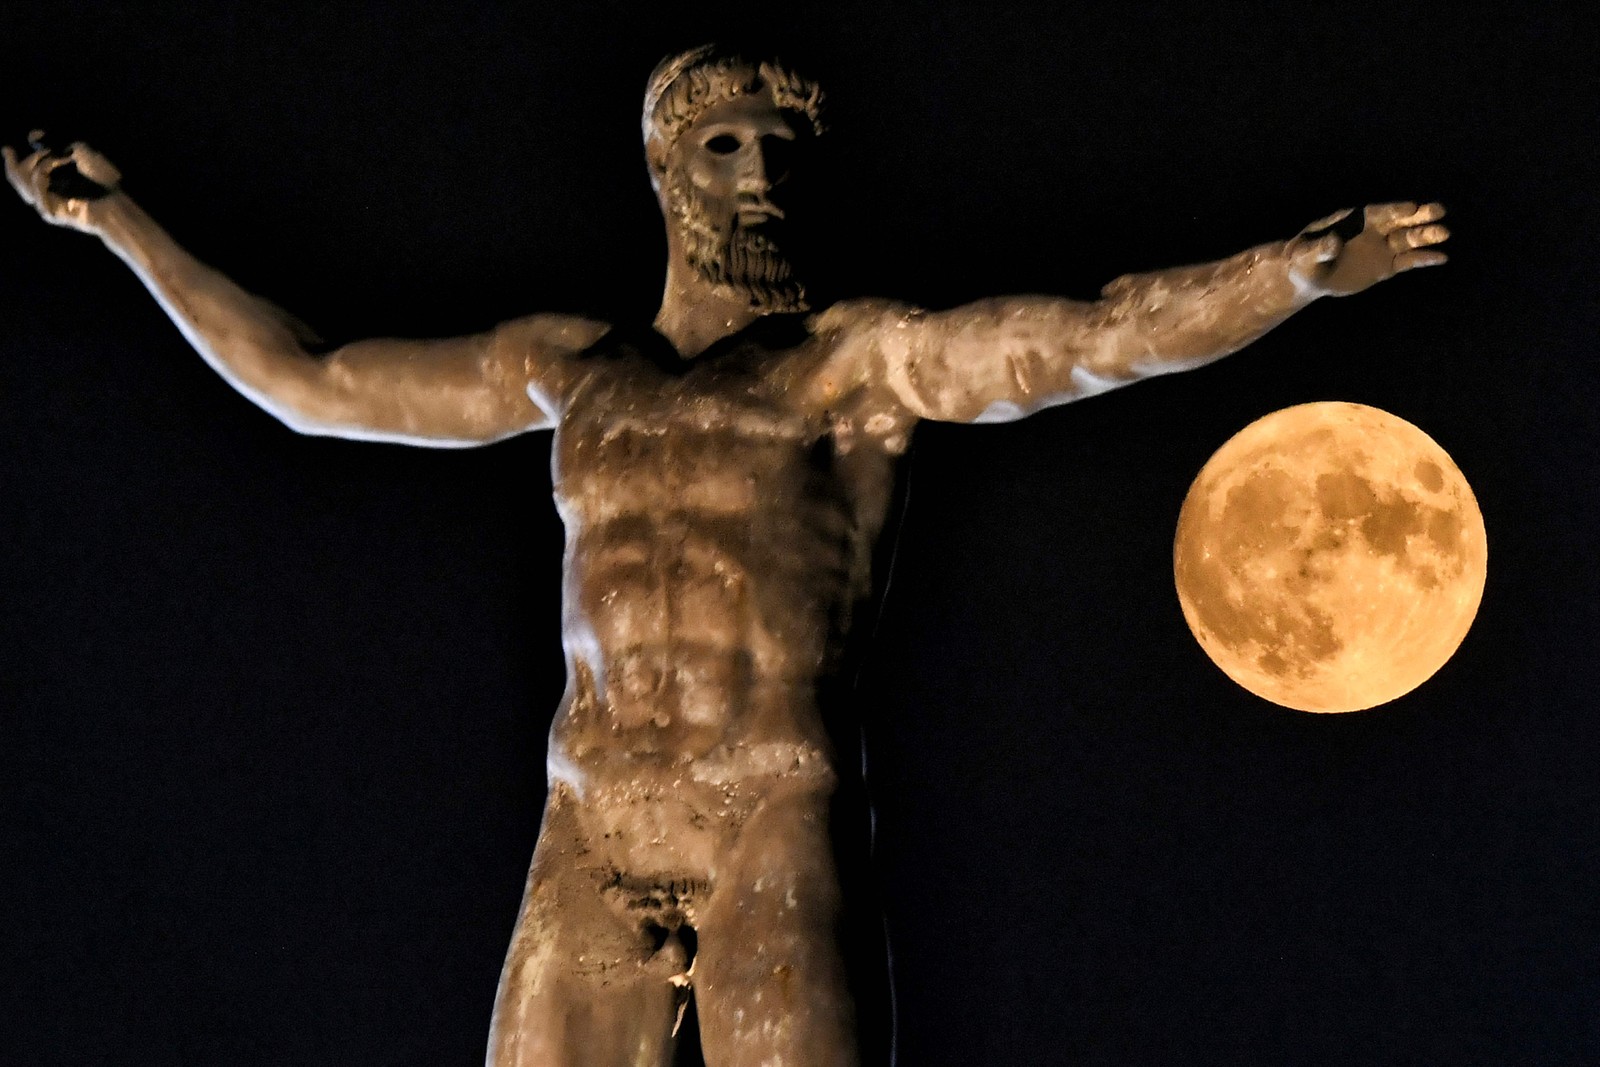 Lua cheia é fotografada próximo ao braço da estátua do antigo deus grego Poseidon, na antiga Corinto, perto de Atenas  — Foto: VALERIE GACHE / AFP